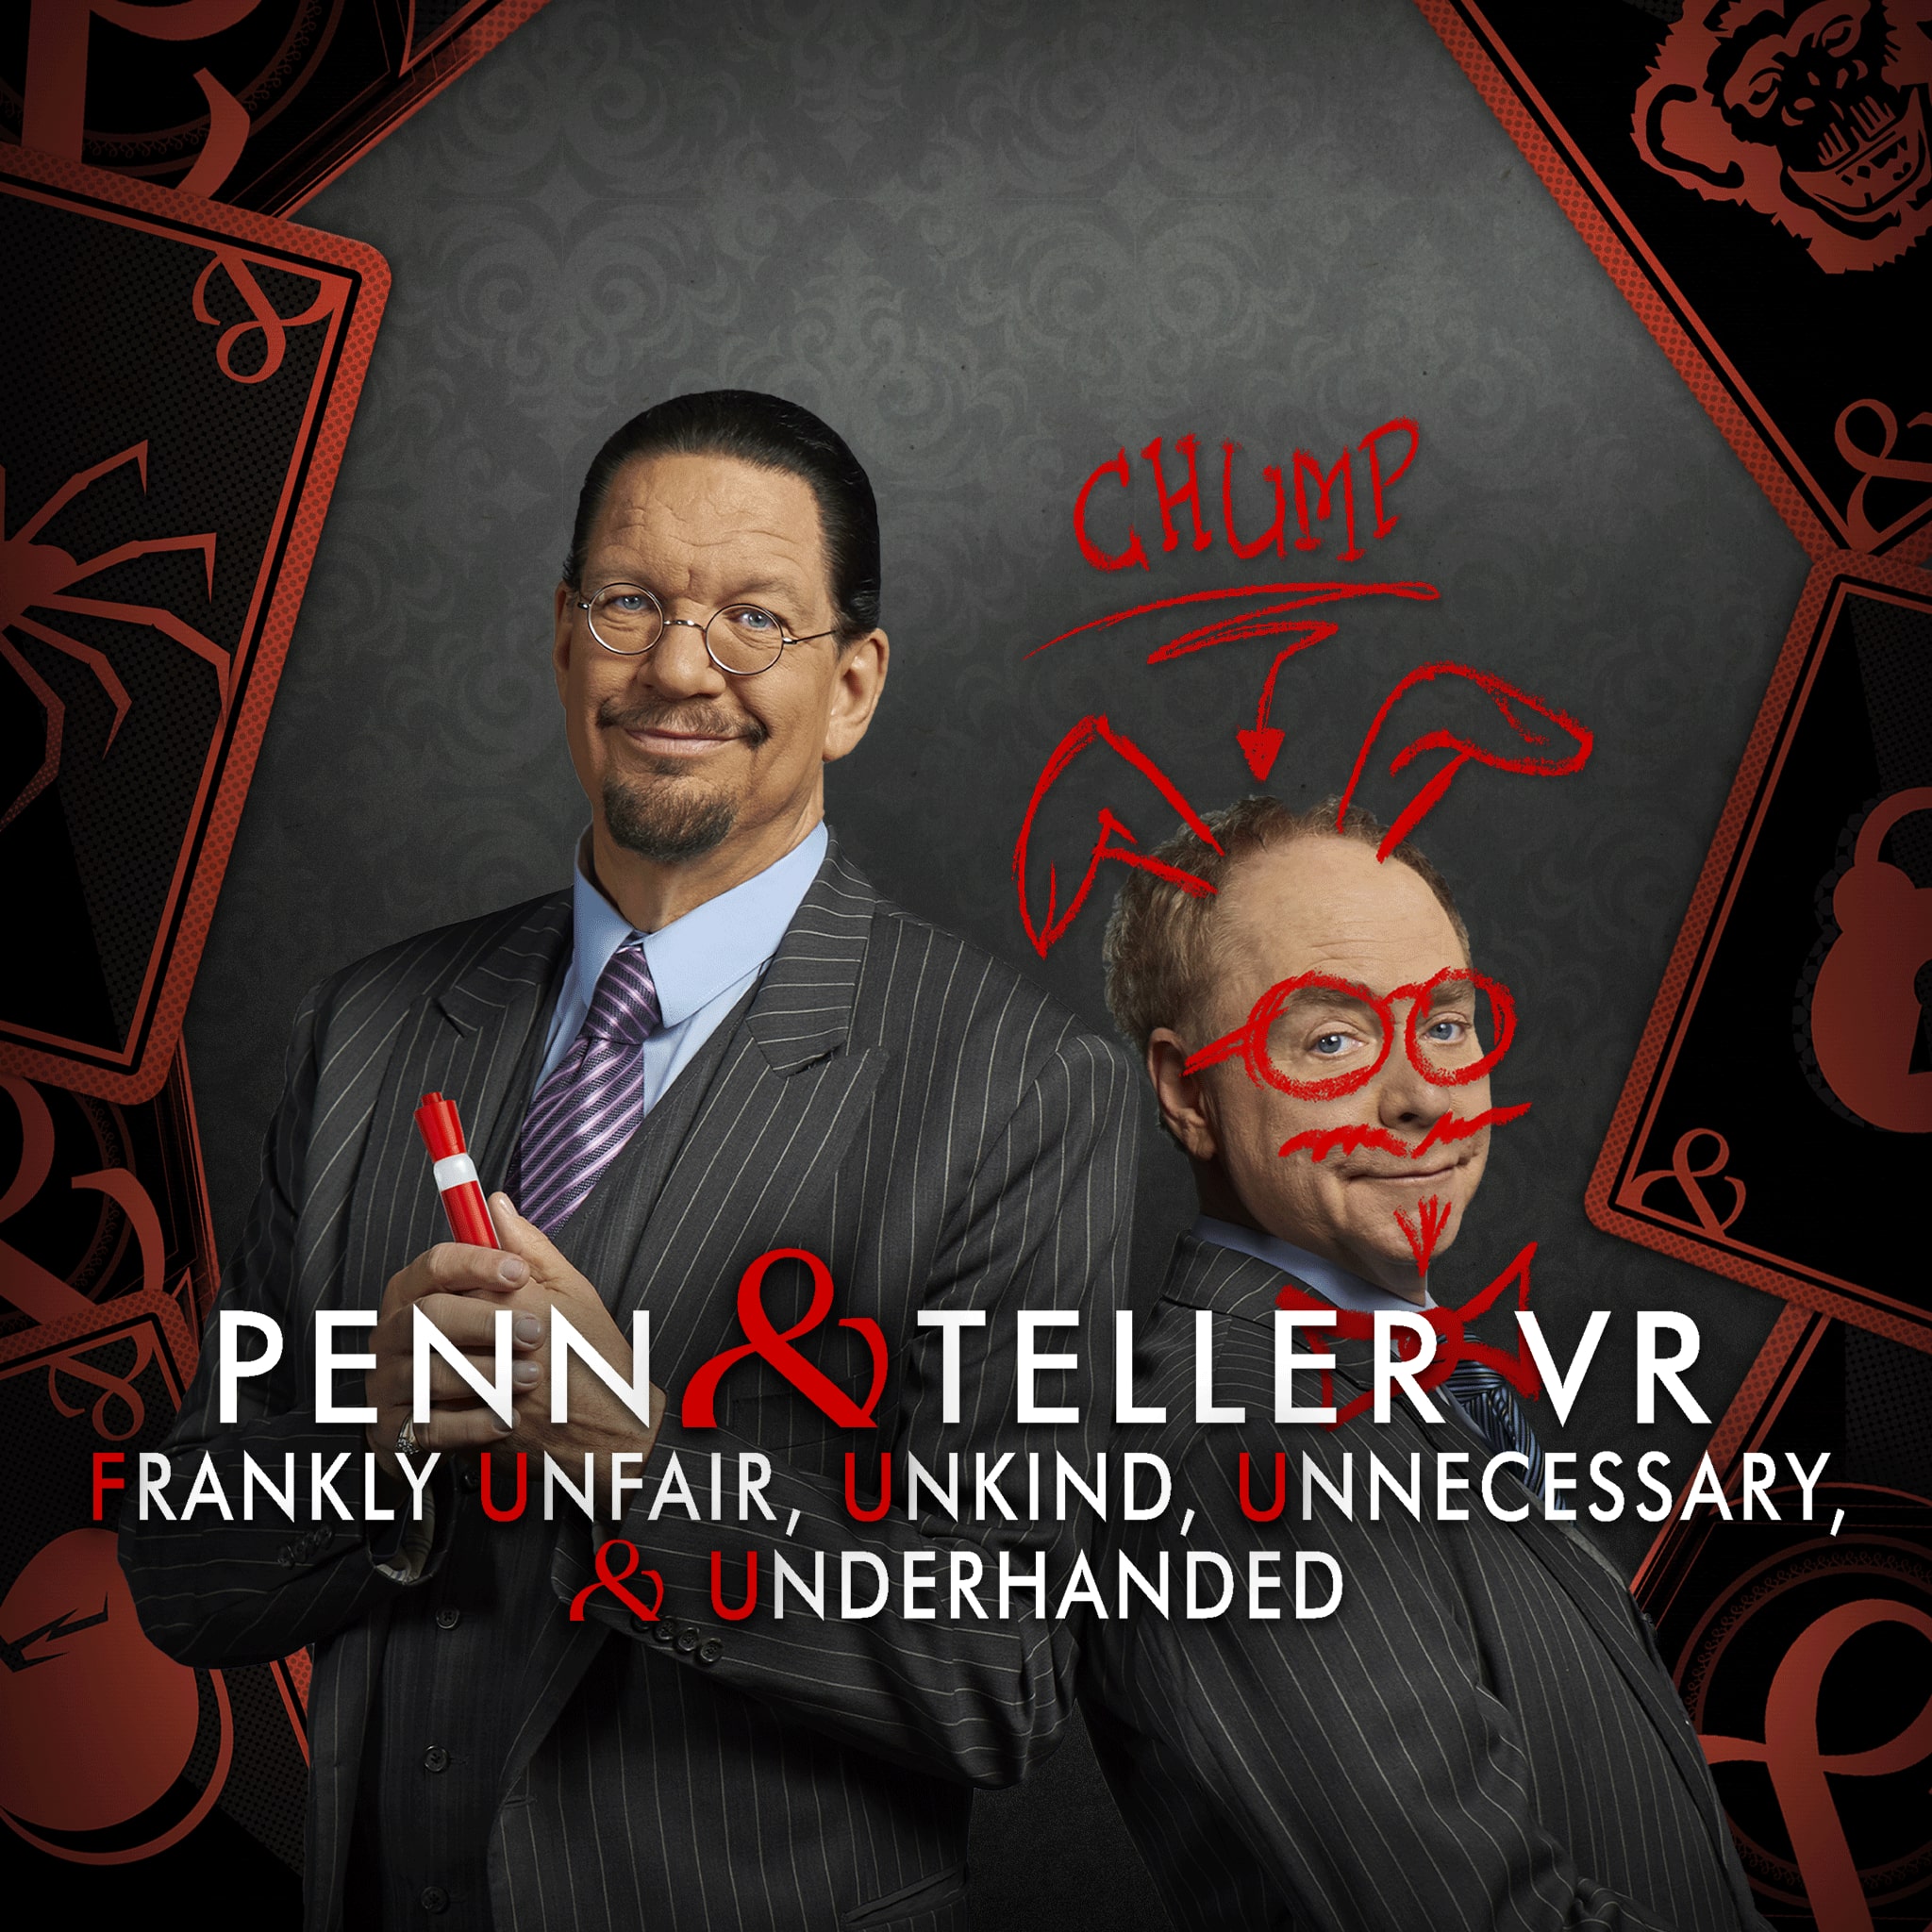 Penn & Teller VR: F U, U, U, & U